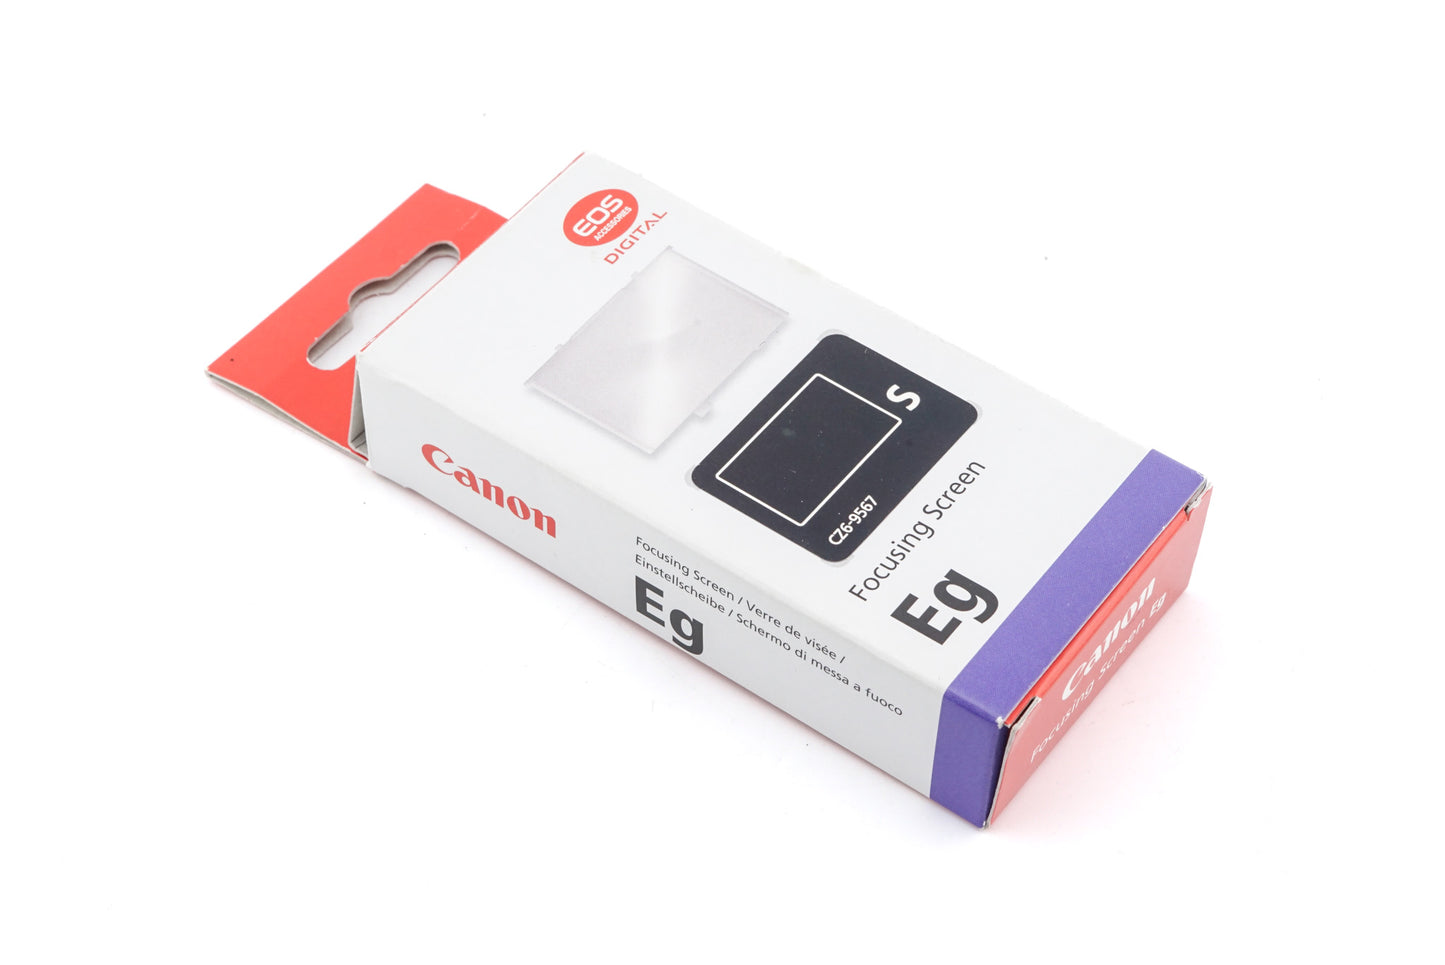 Canon EOS-1 Focusing Screen EG-S